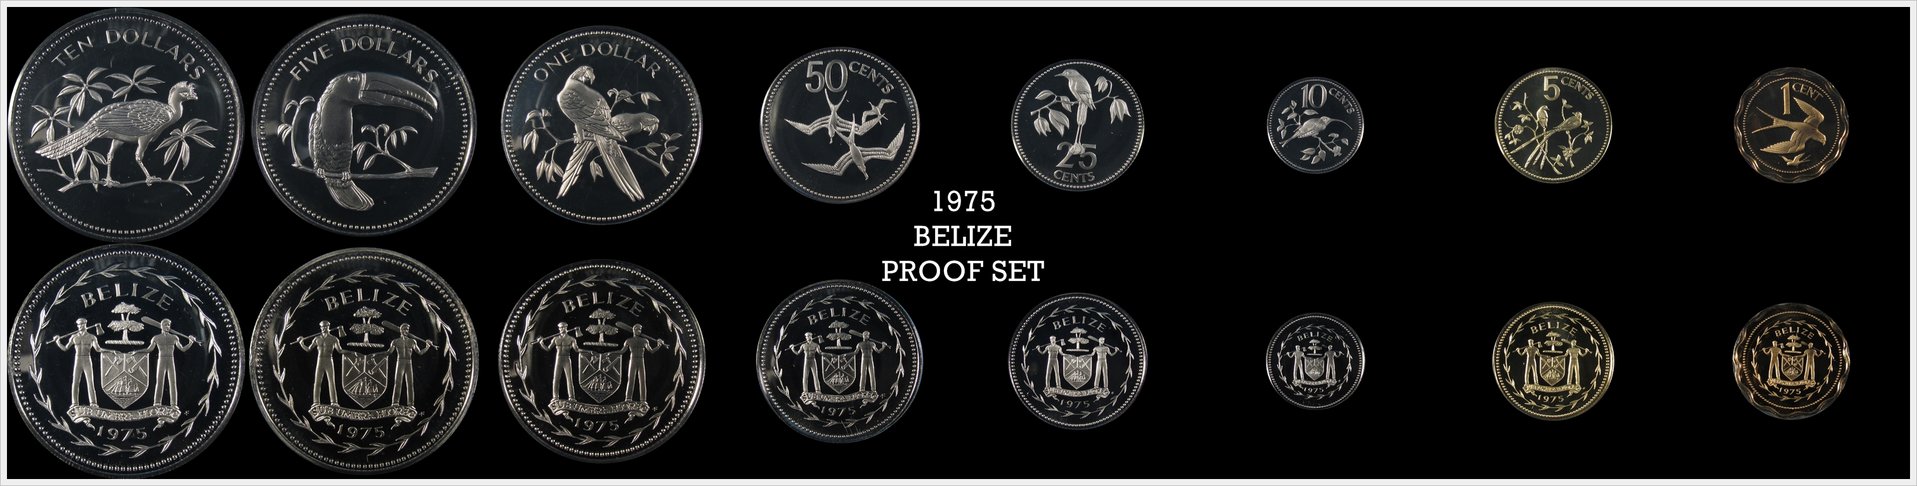 Belize 1975 Proof Set.jpg